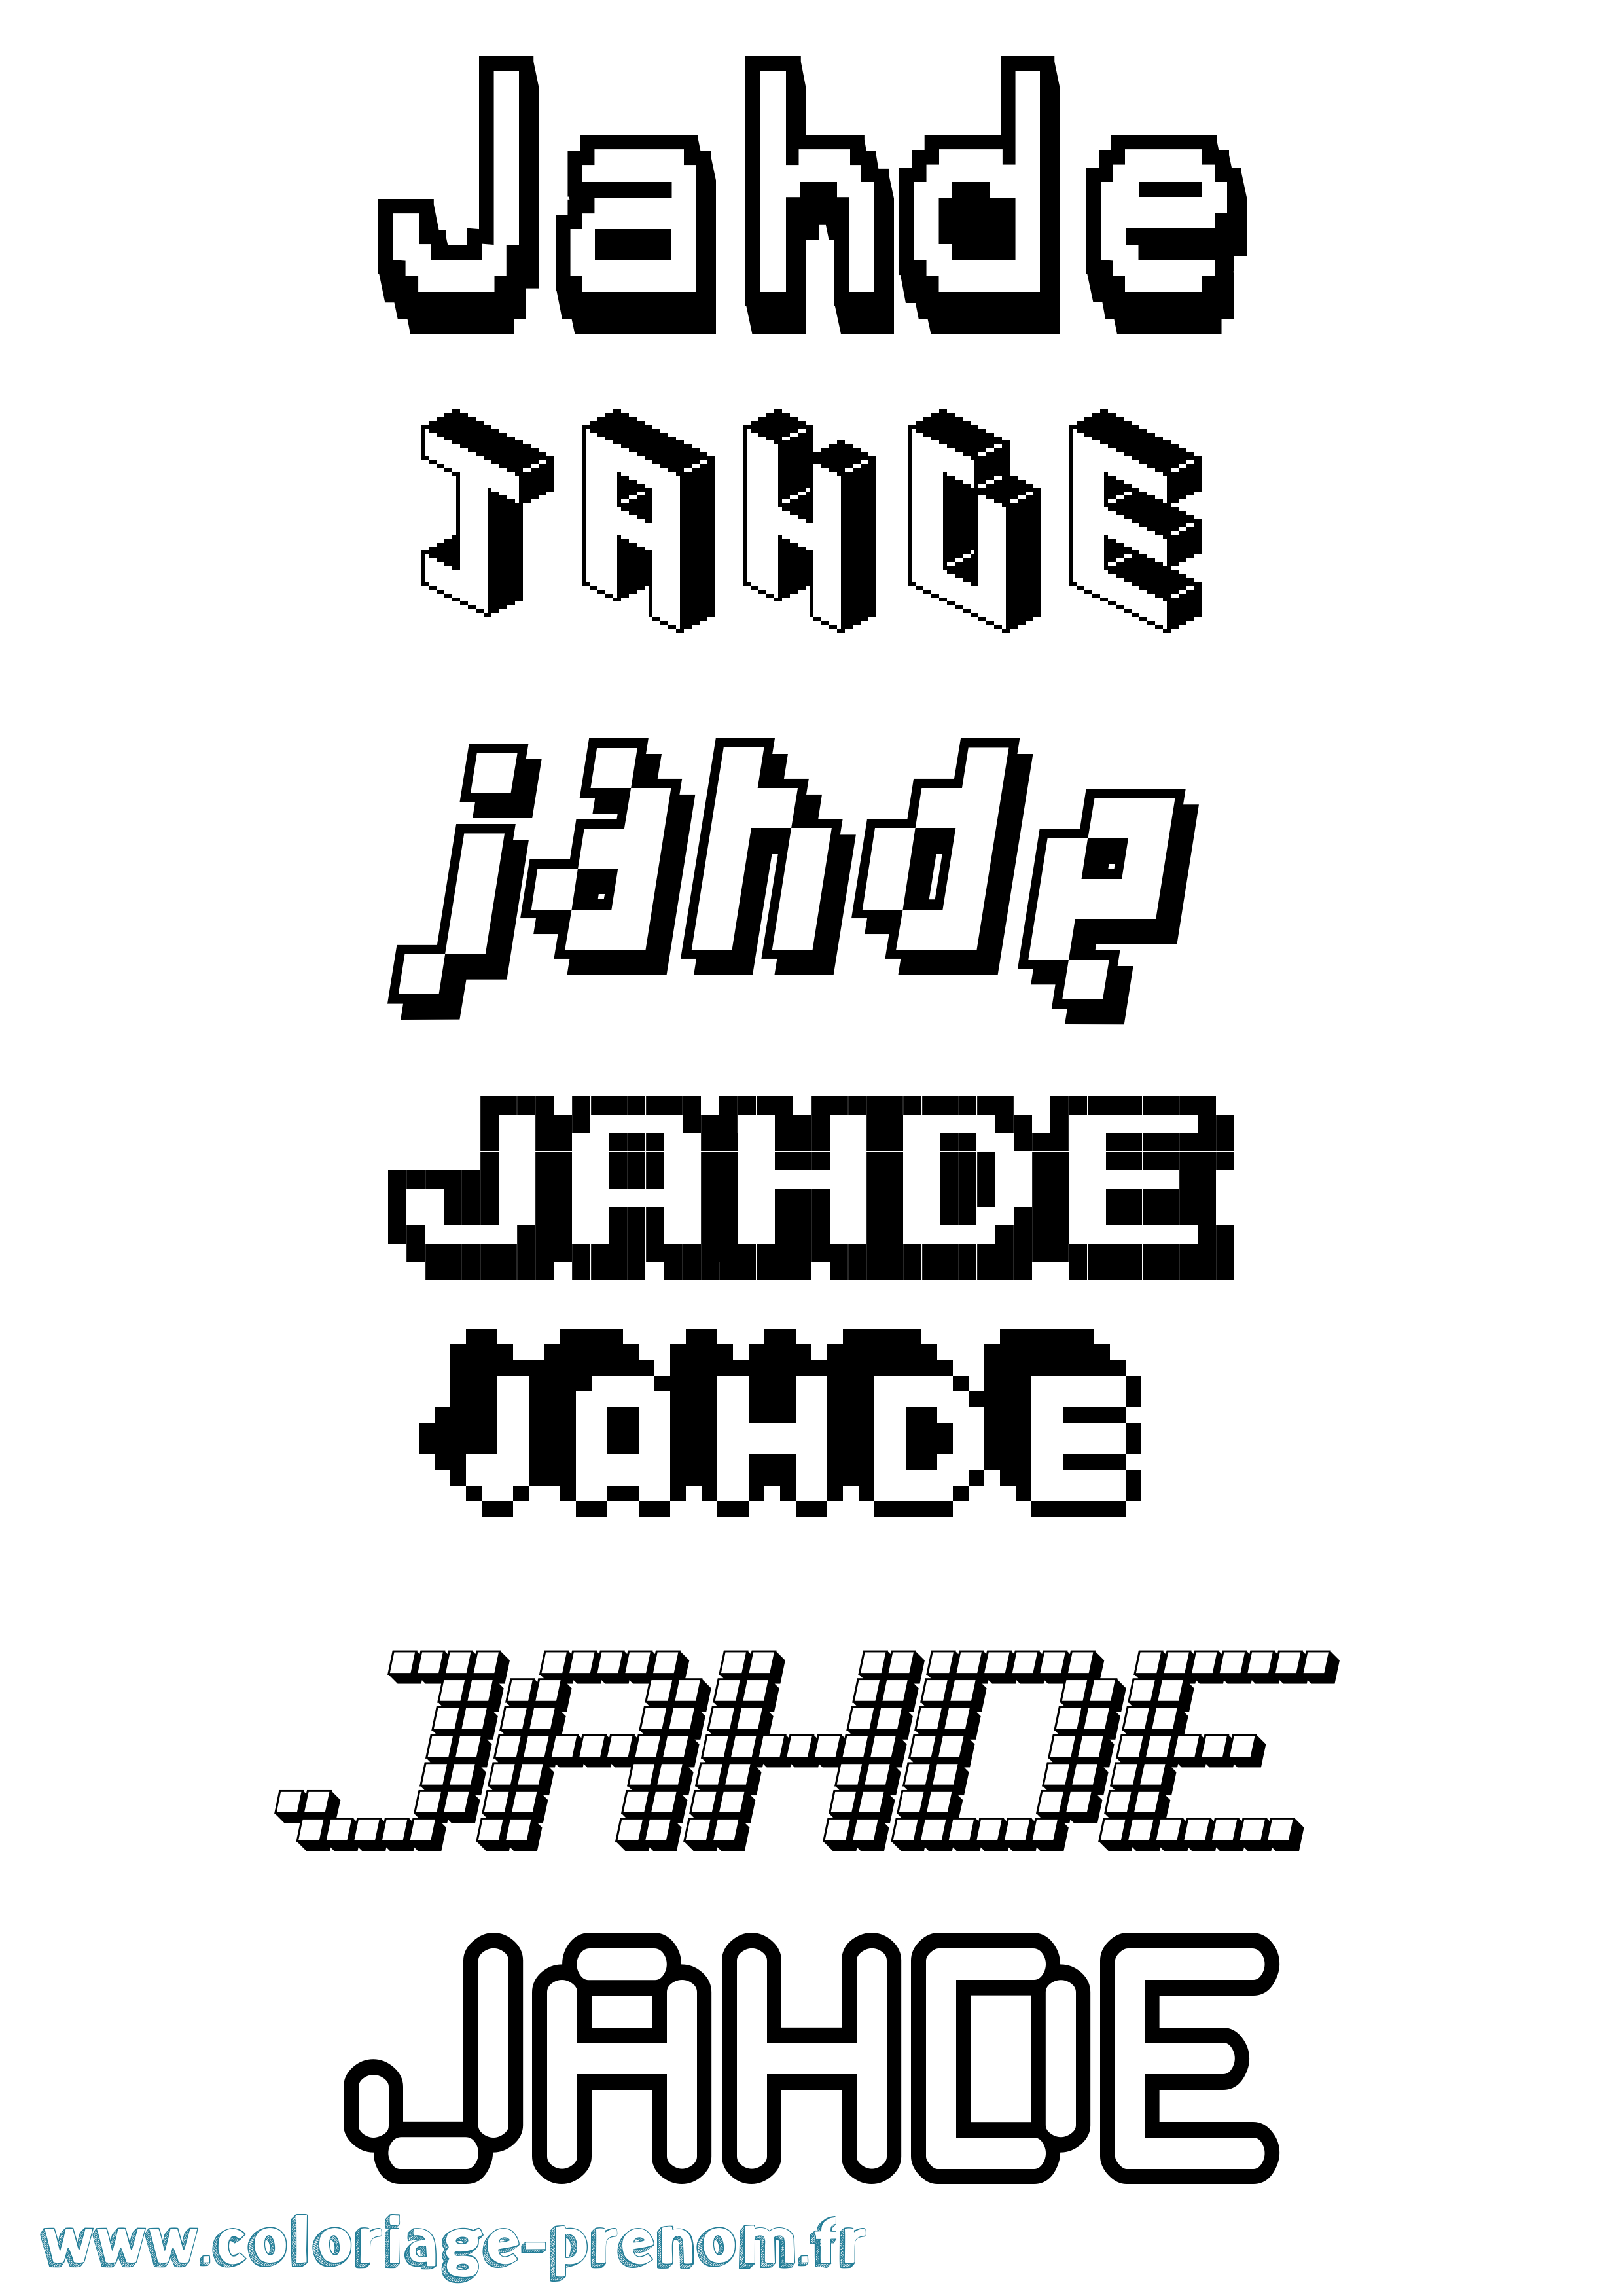 Coloriage prénom Jahde Pixel